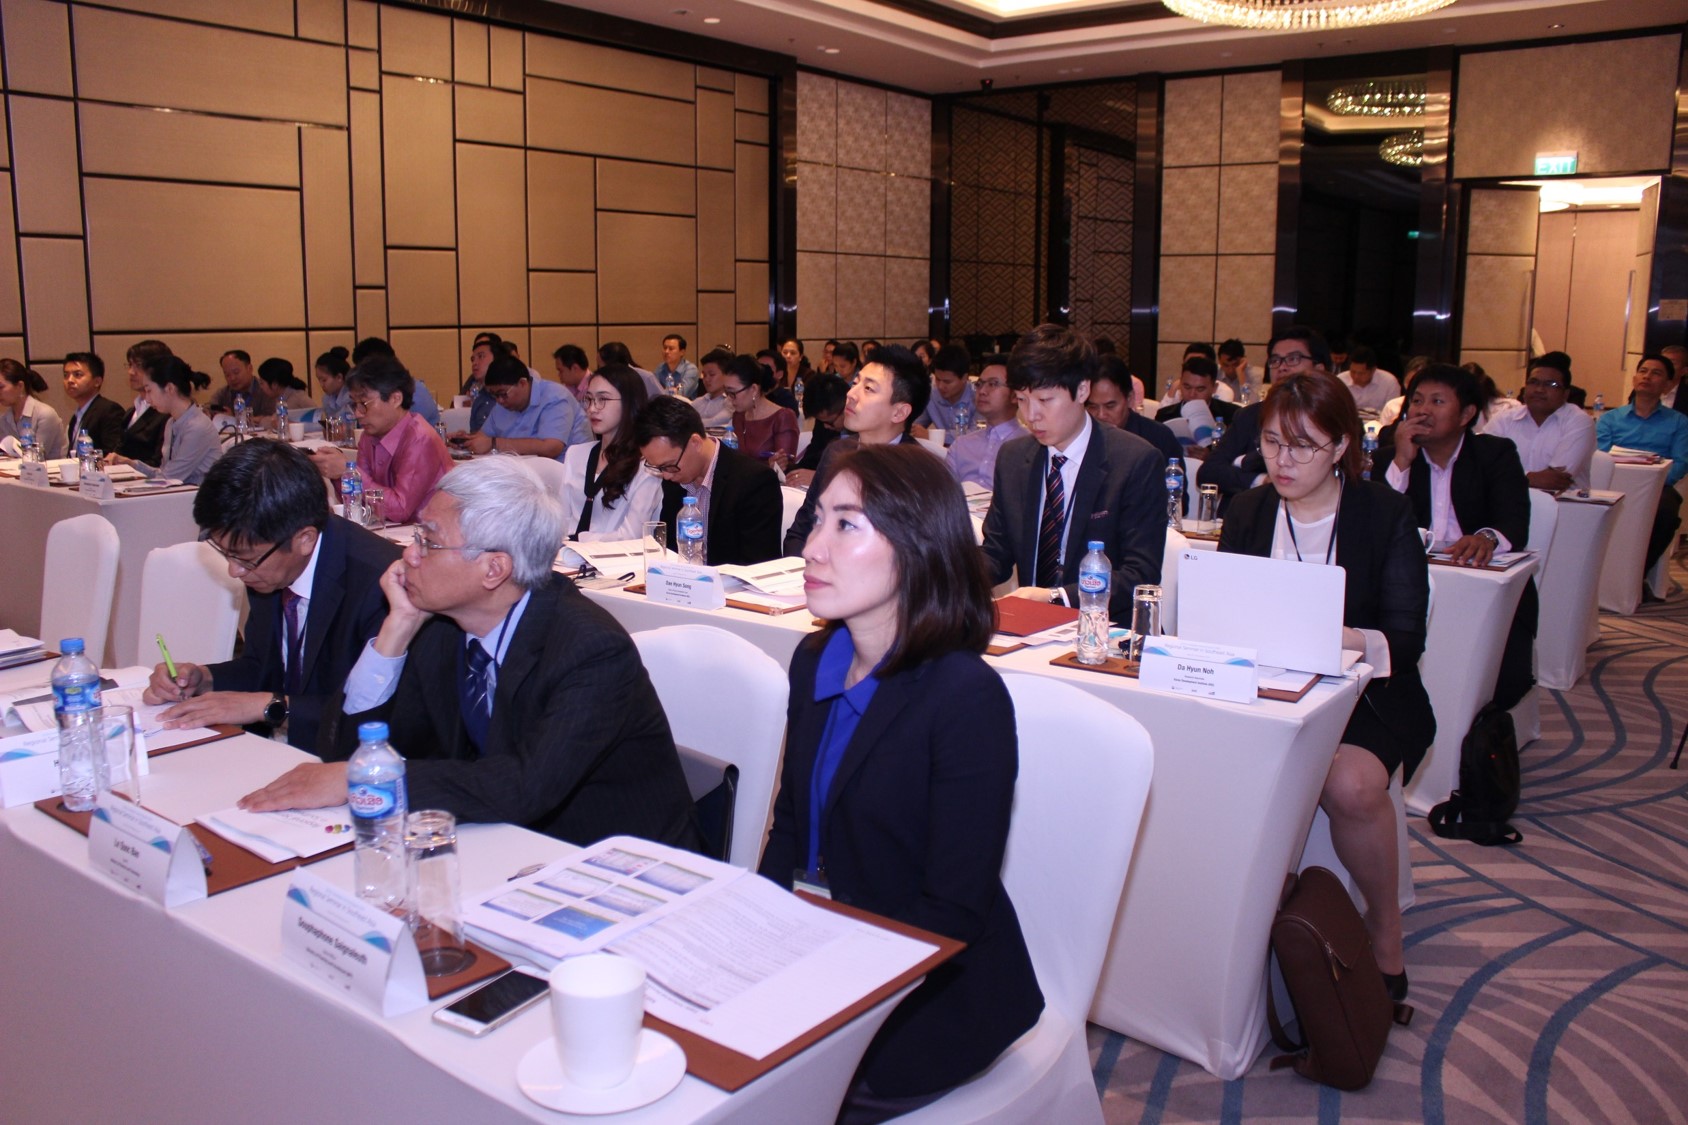 2017/18 KSP Regional Seminar in Southeast Asia image